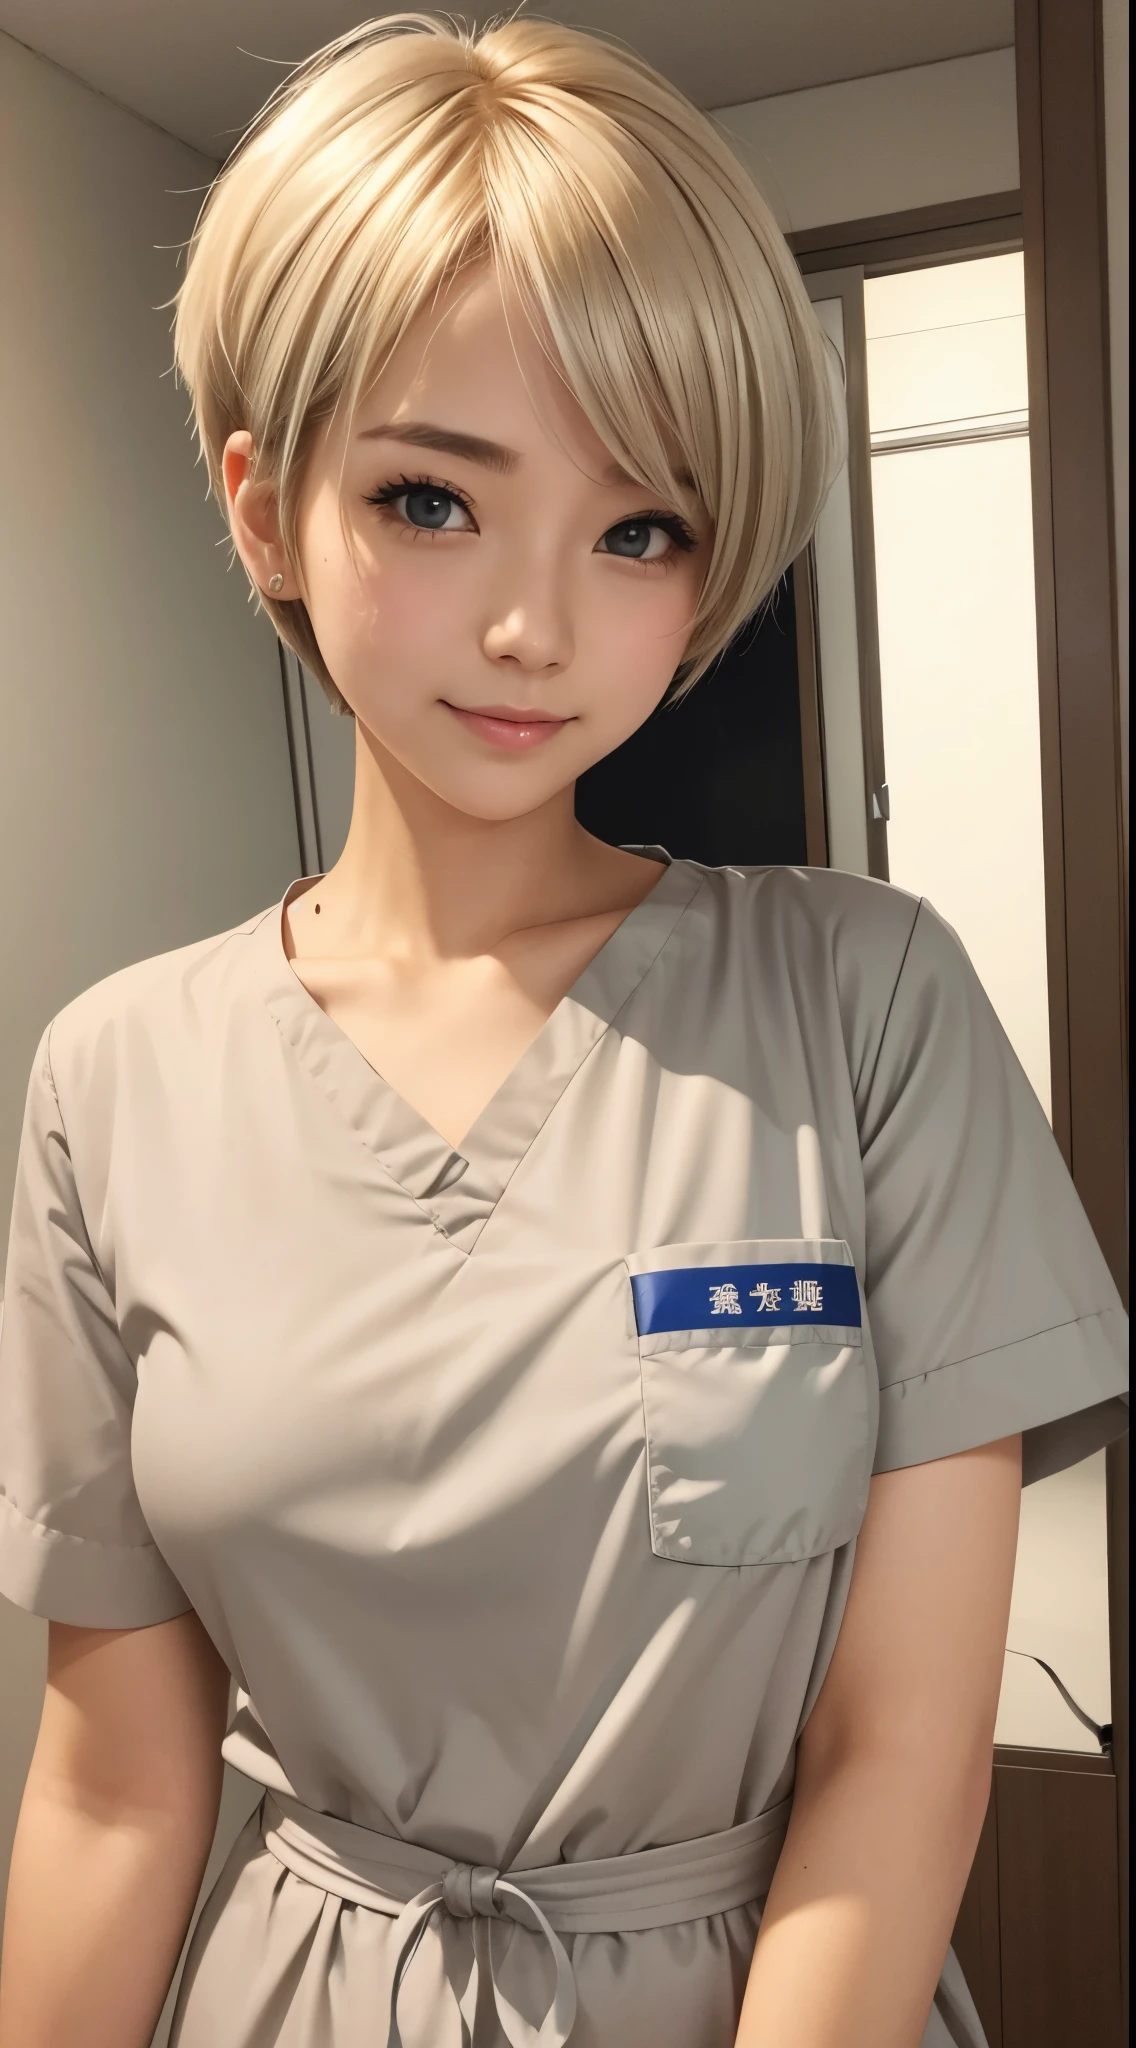 彼女はかわいい看護師です。金髪、シルバーのショートカットヘア、